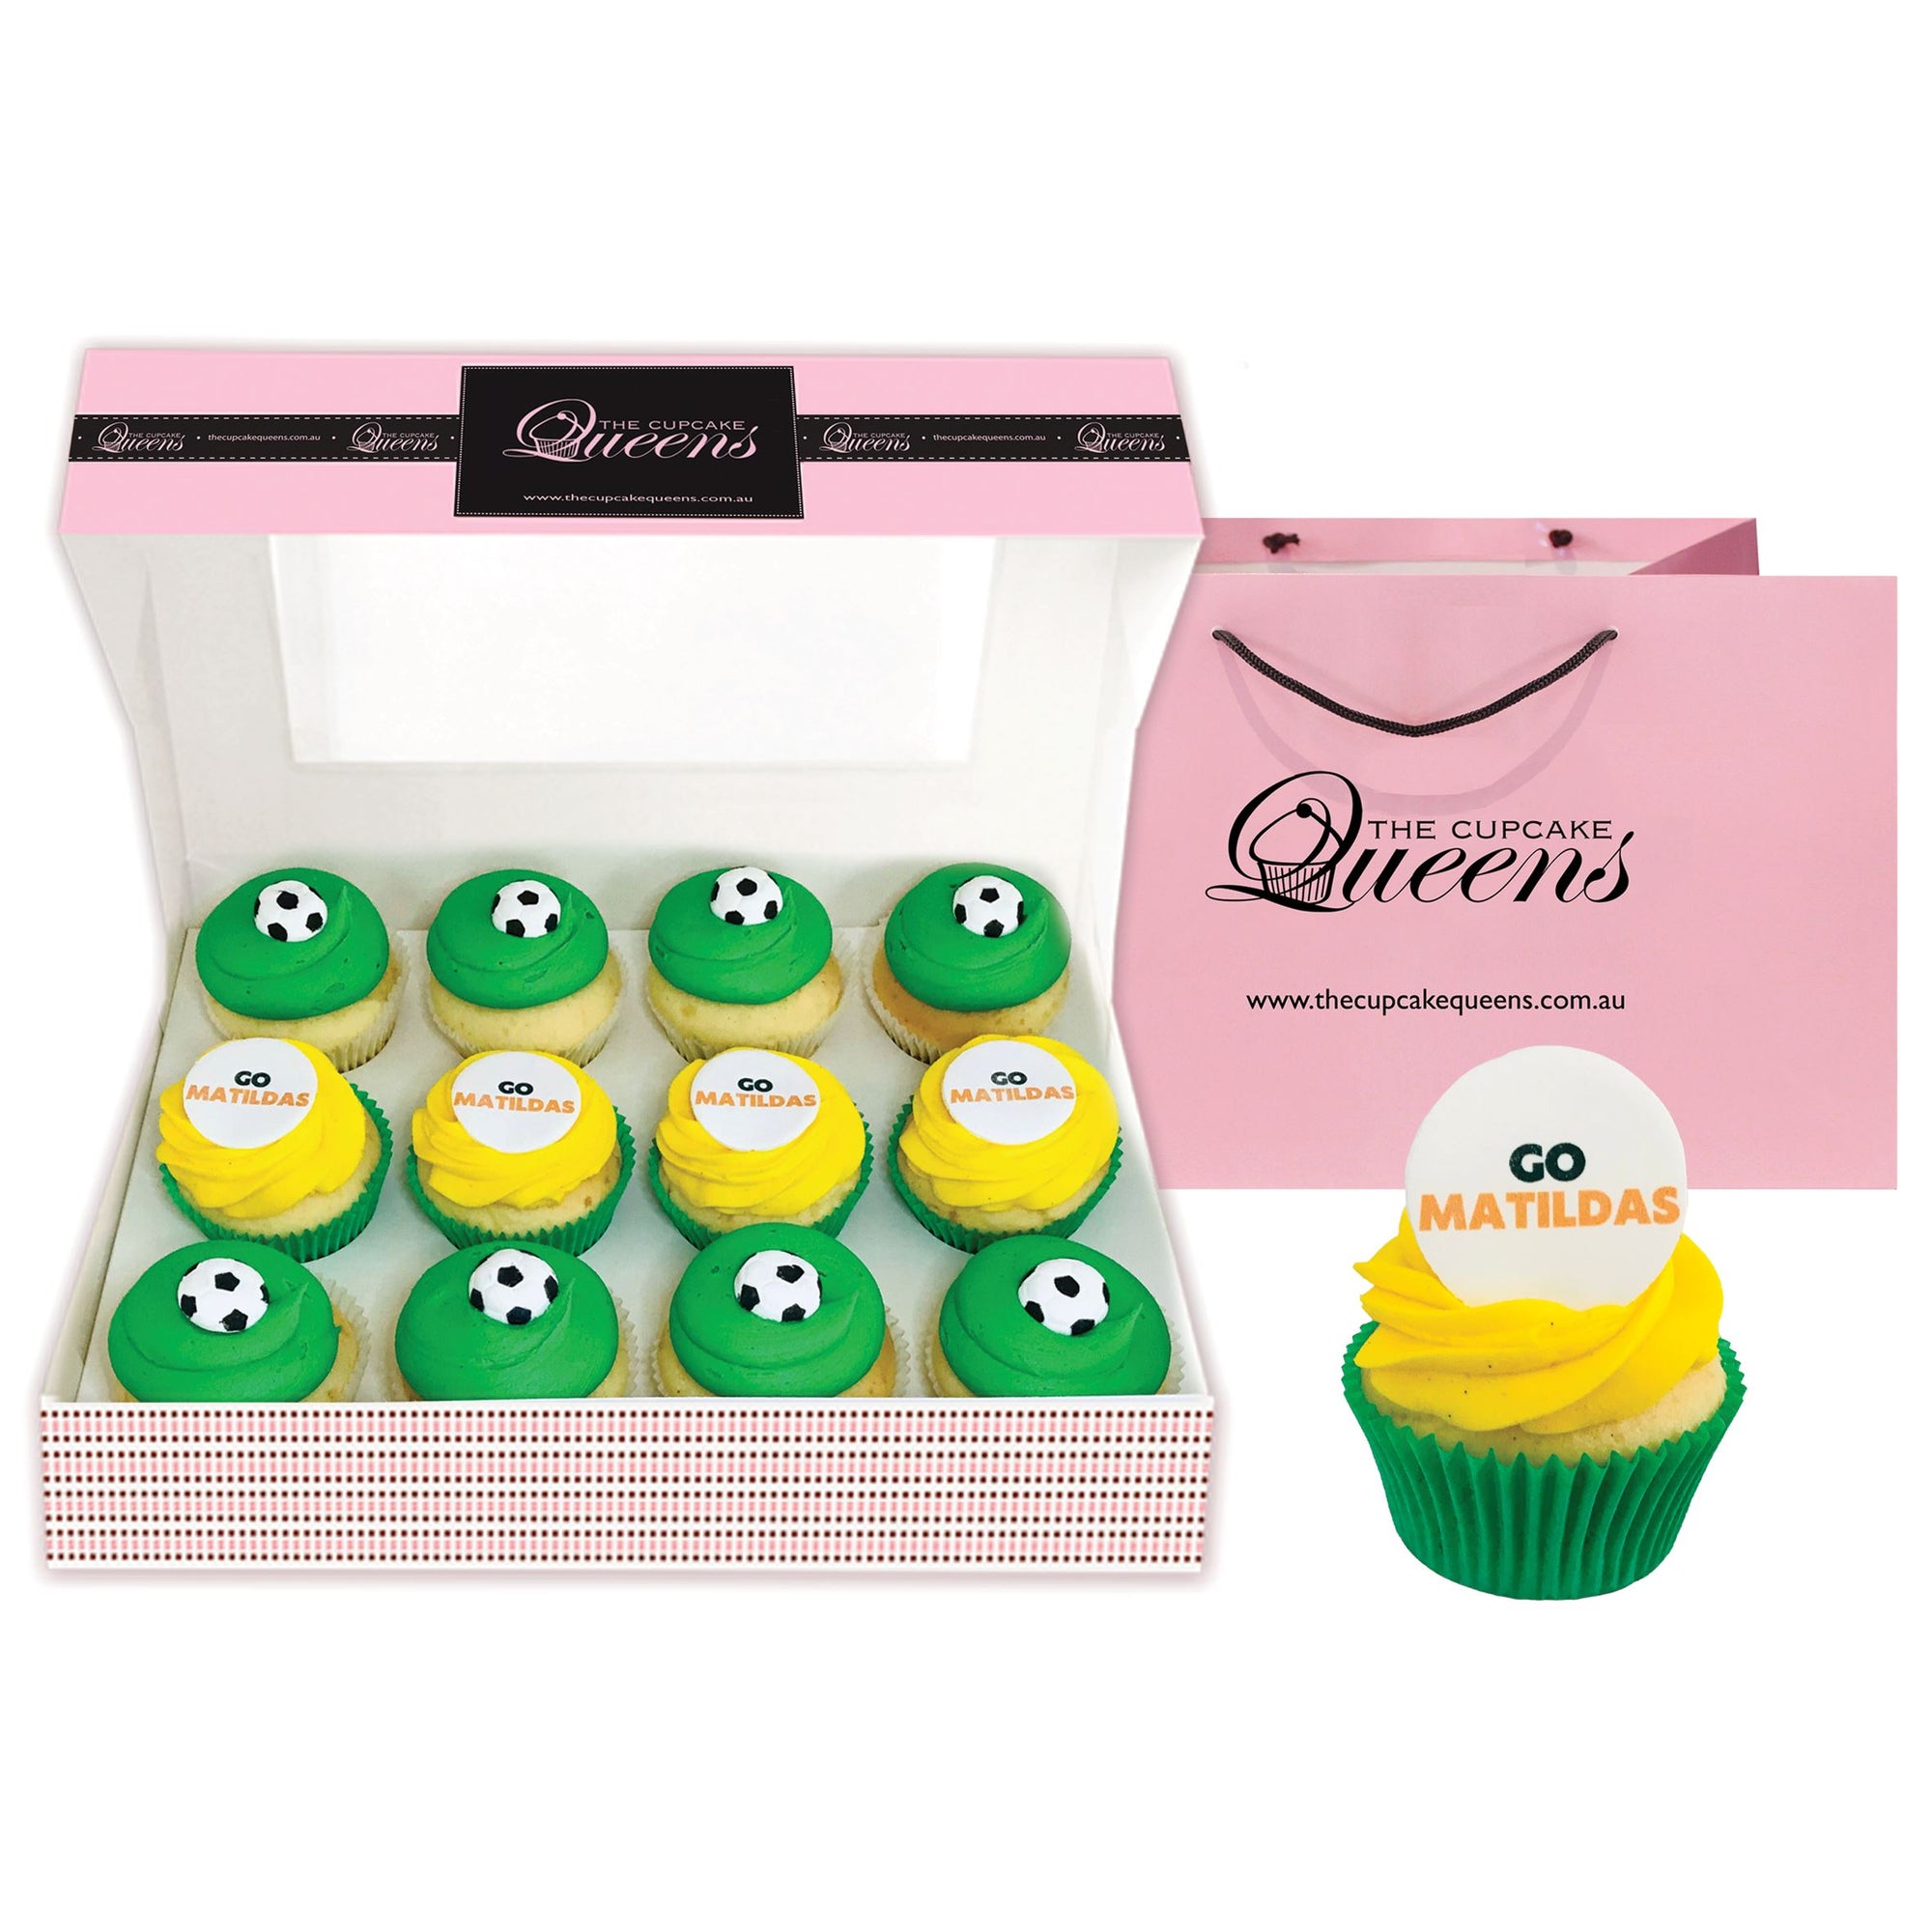 Go Matildas Gift Box Cupcakes The Cupcake Queens 